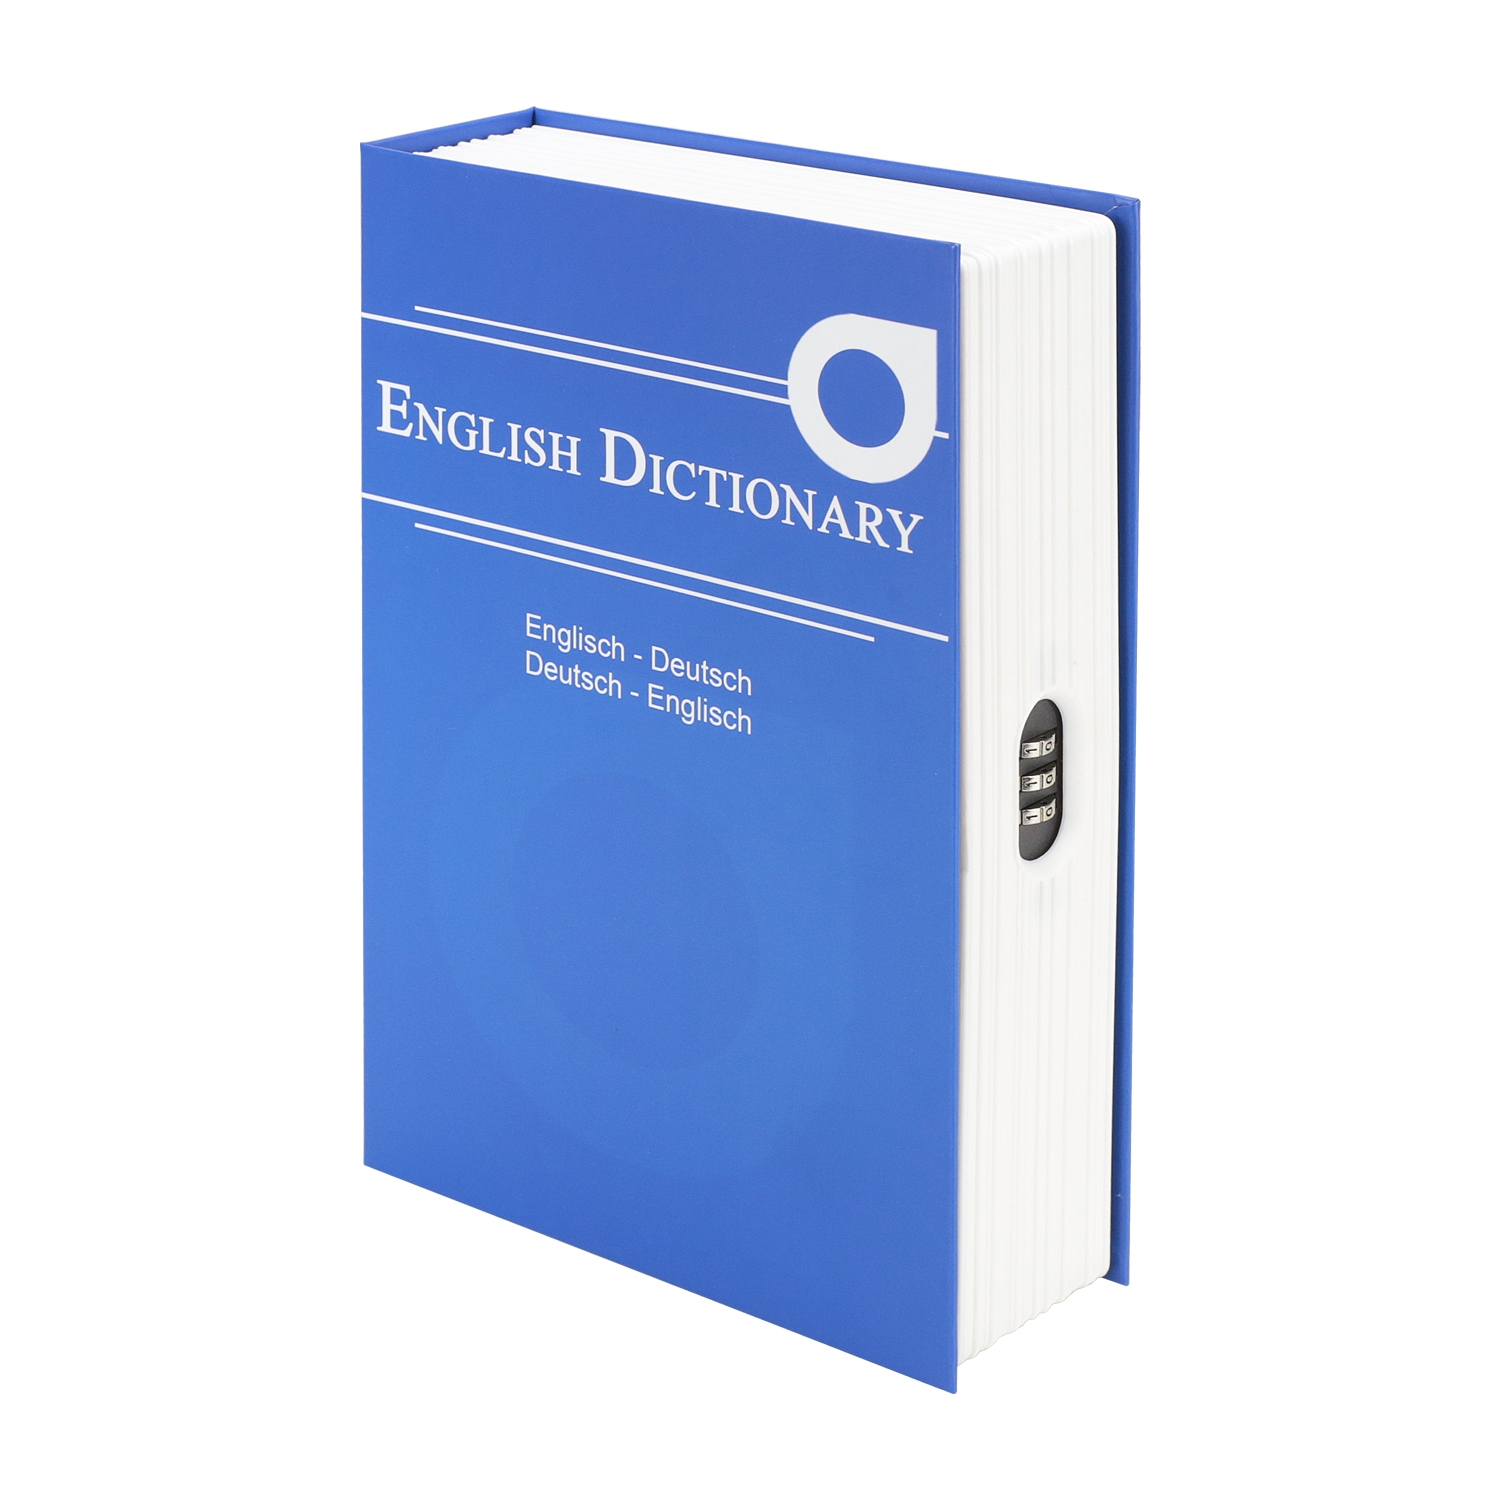 Buchtresor English Dictionary mit Zahlenschloss von HMF mit 23.5 cm Breite in Blau